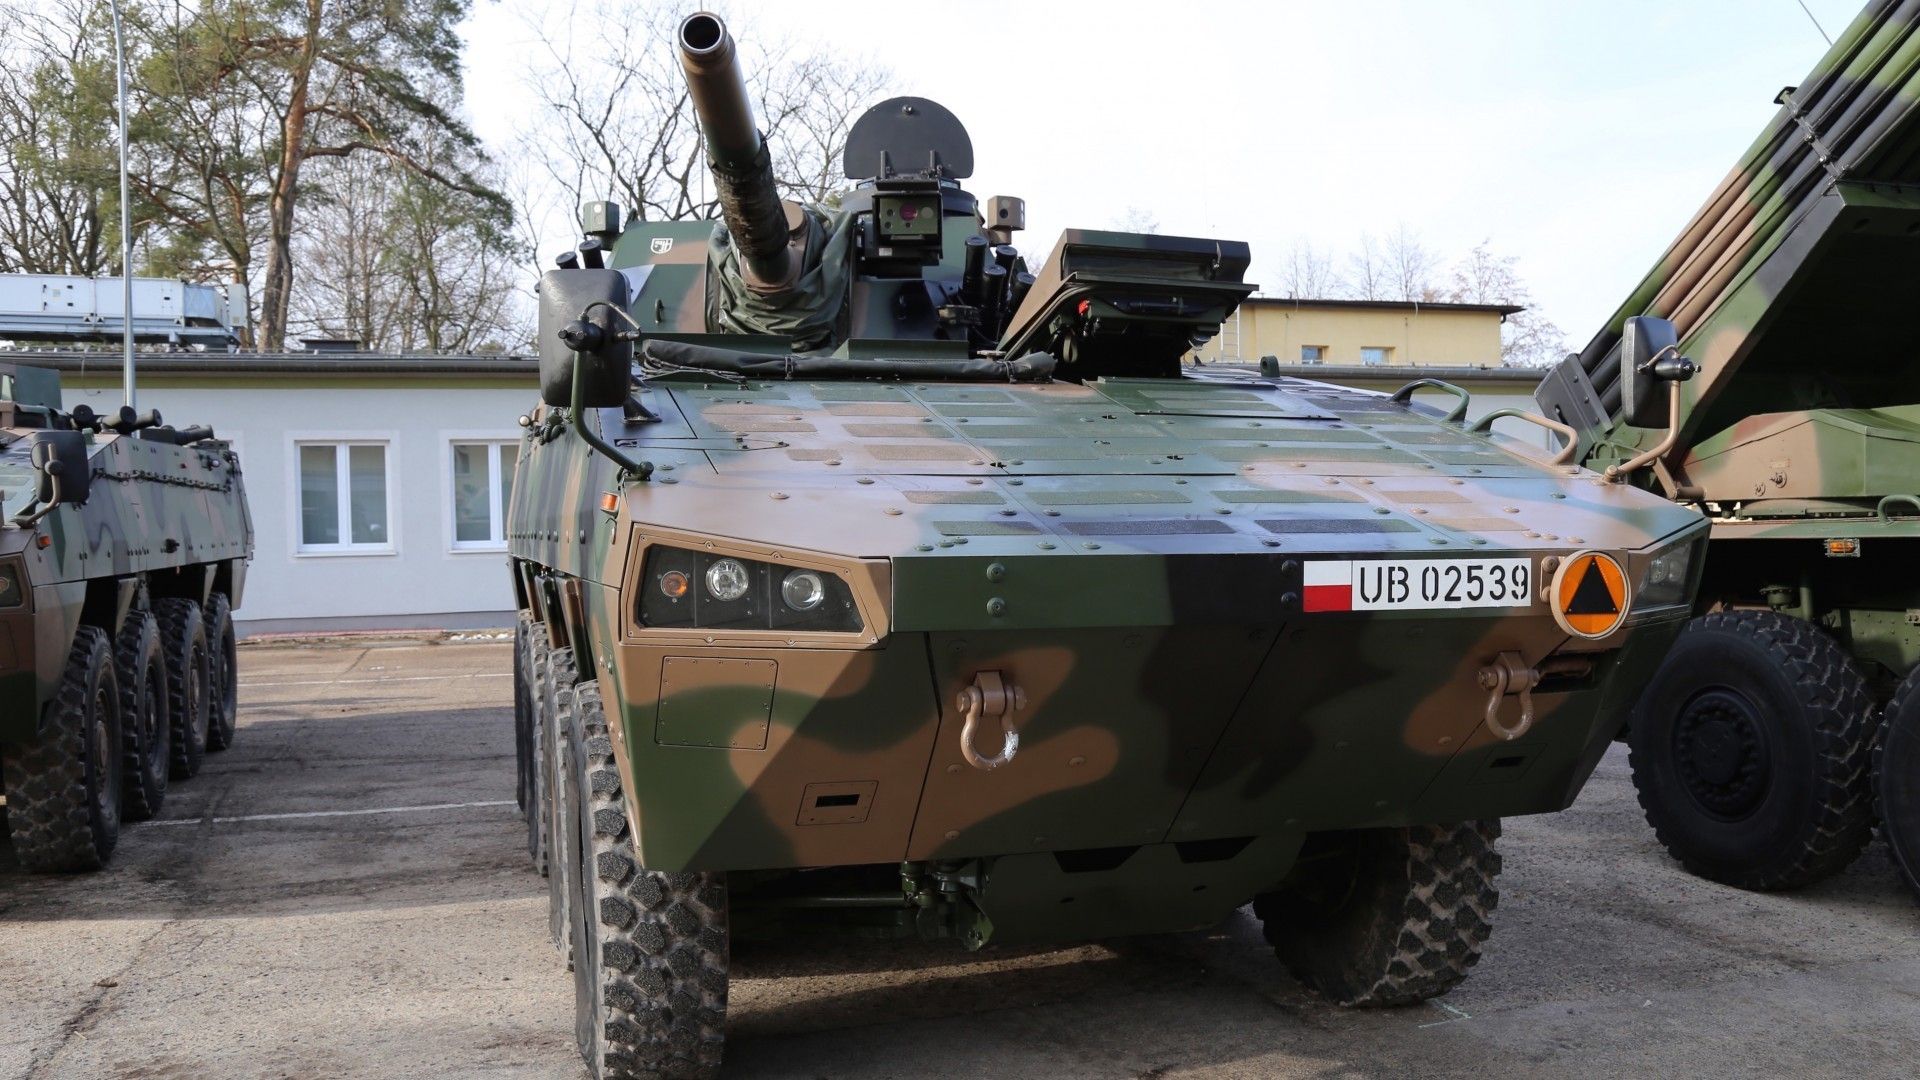 Samobieżny 120-mm moździerz Rak na podwoziu kołowym to jeden z produktów zakupionych dla wojska w ciągu ostatnich trzech lat. Fot. Rafał Lesiecki / Defence24.pl